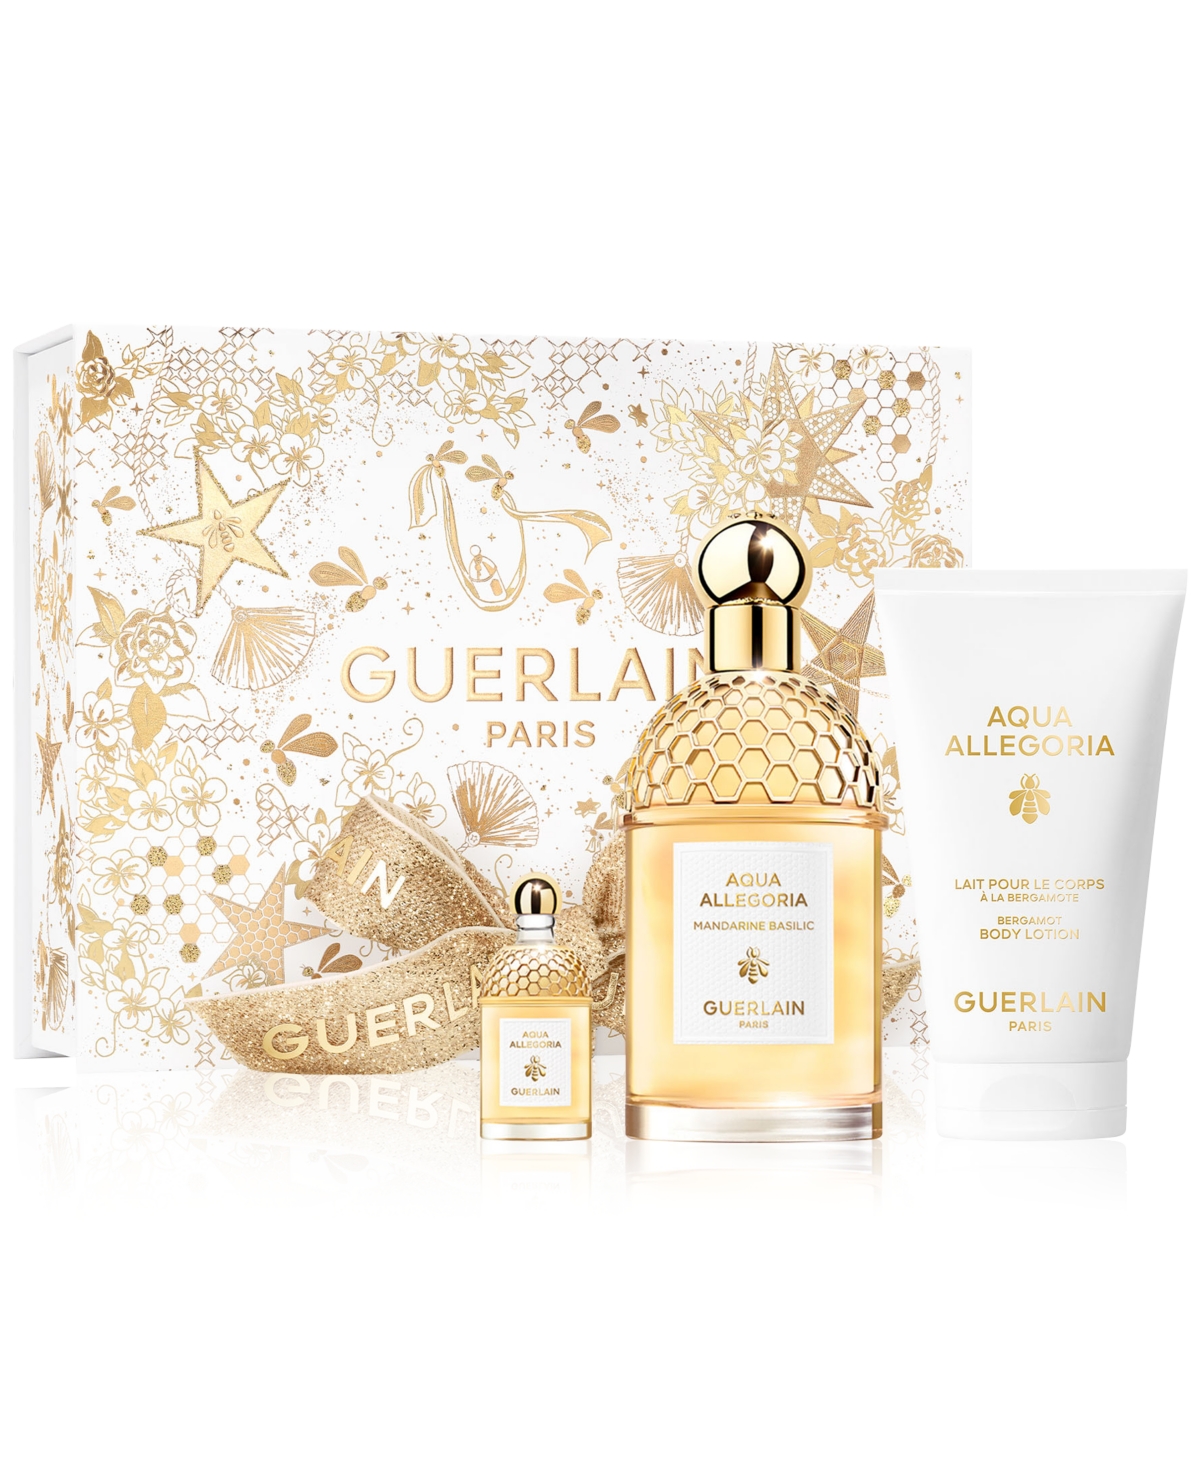 Guerlain 3-pc. Aqua Allegoria Mandarine Basilic Eau De Toilette Holiday Gift Set